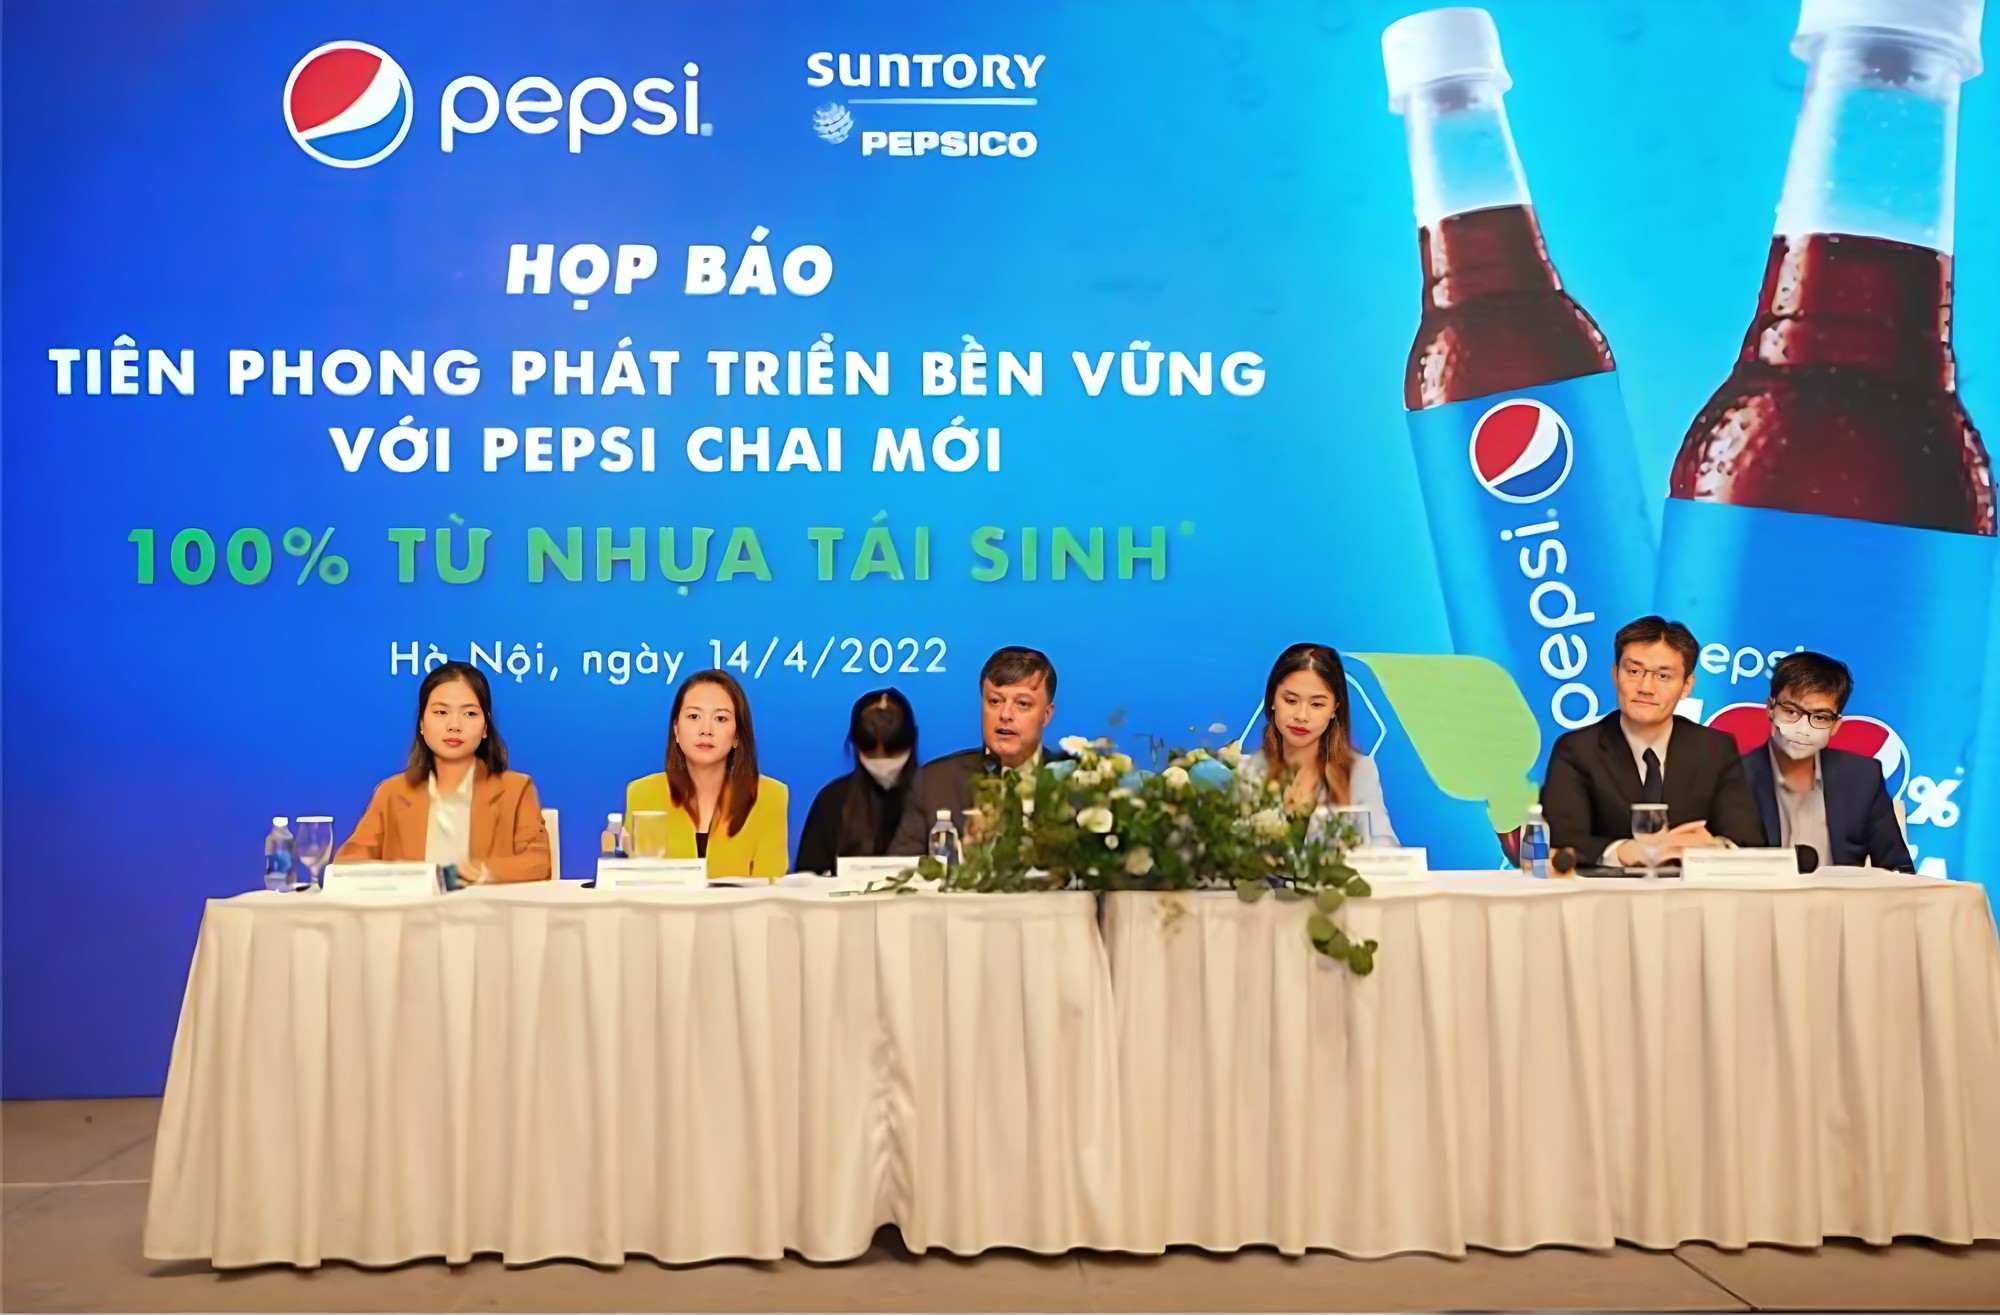 Suntory PepsiCo Việt Nam: Tiên phong đổi mới và phát triển bền vững - Ảnh 4.